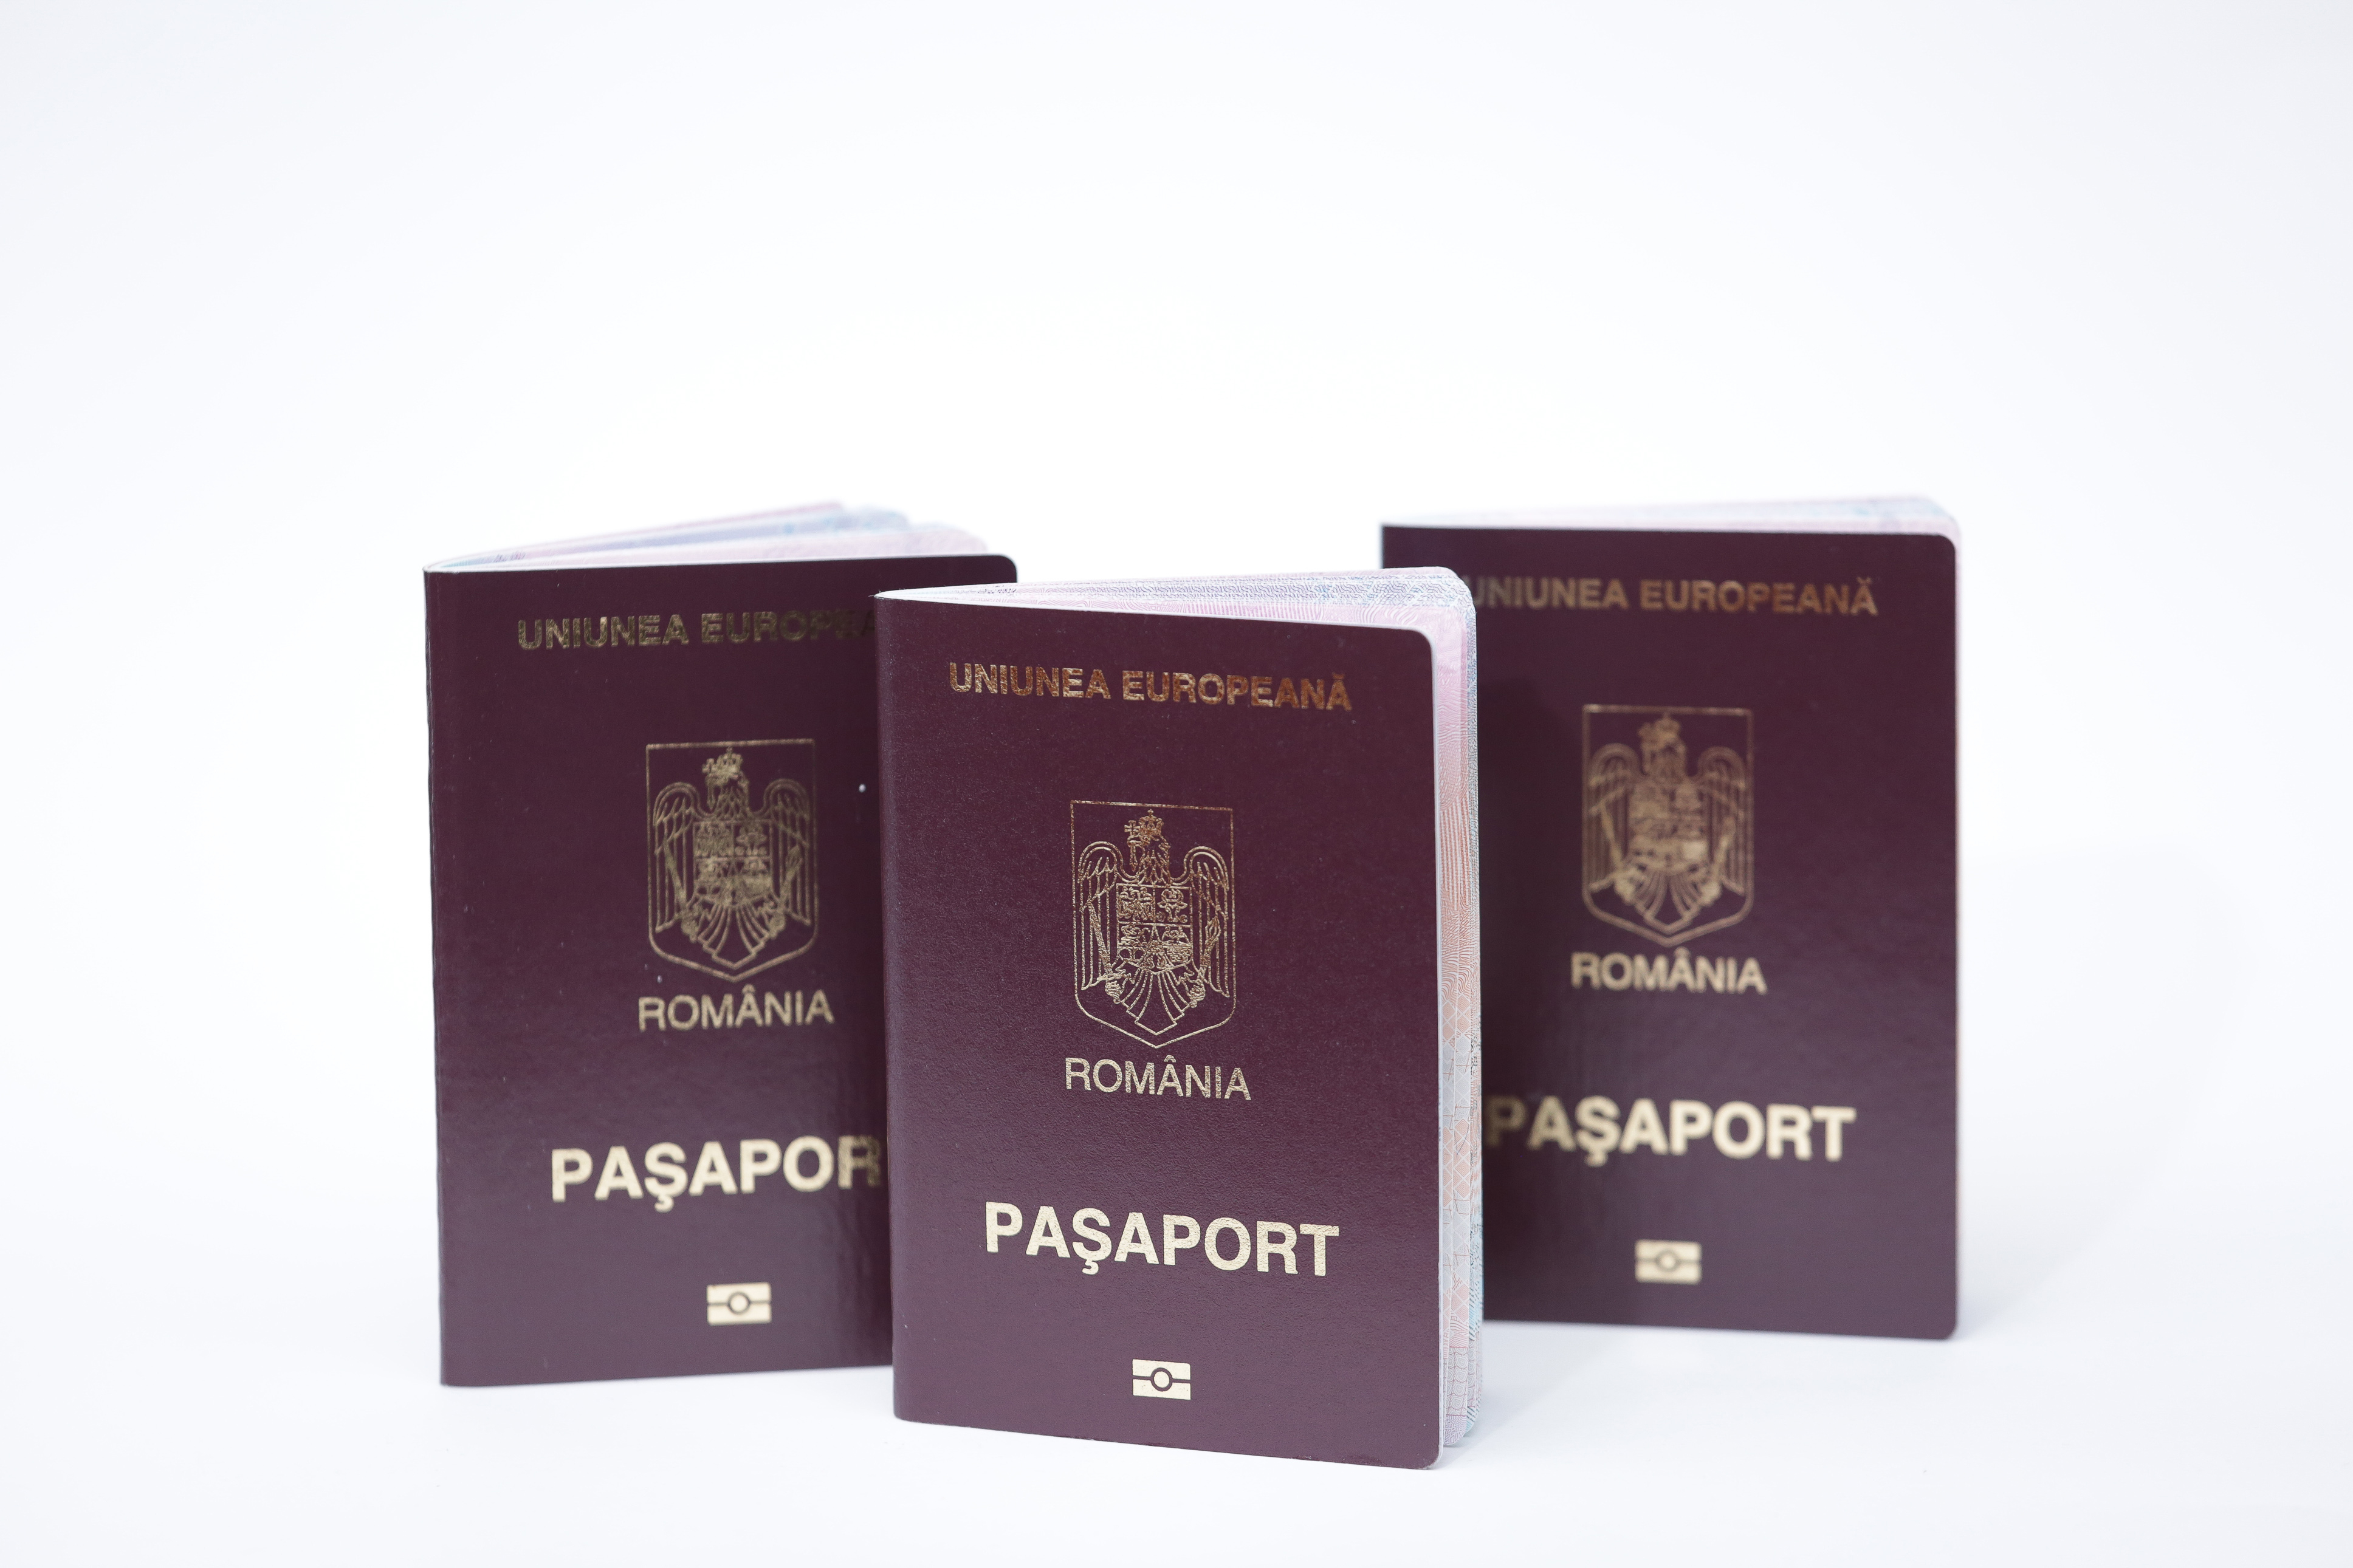 Румынские паспорта, которые могут получить иностранцы